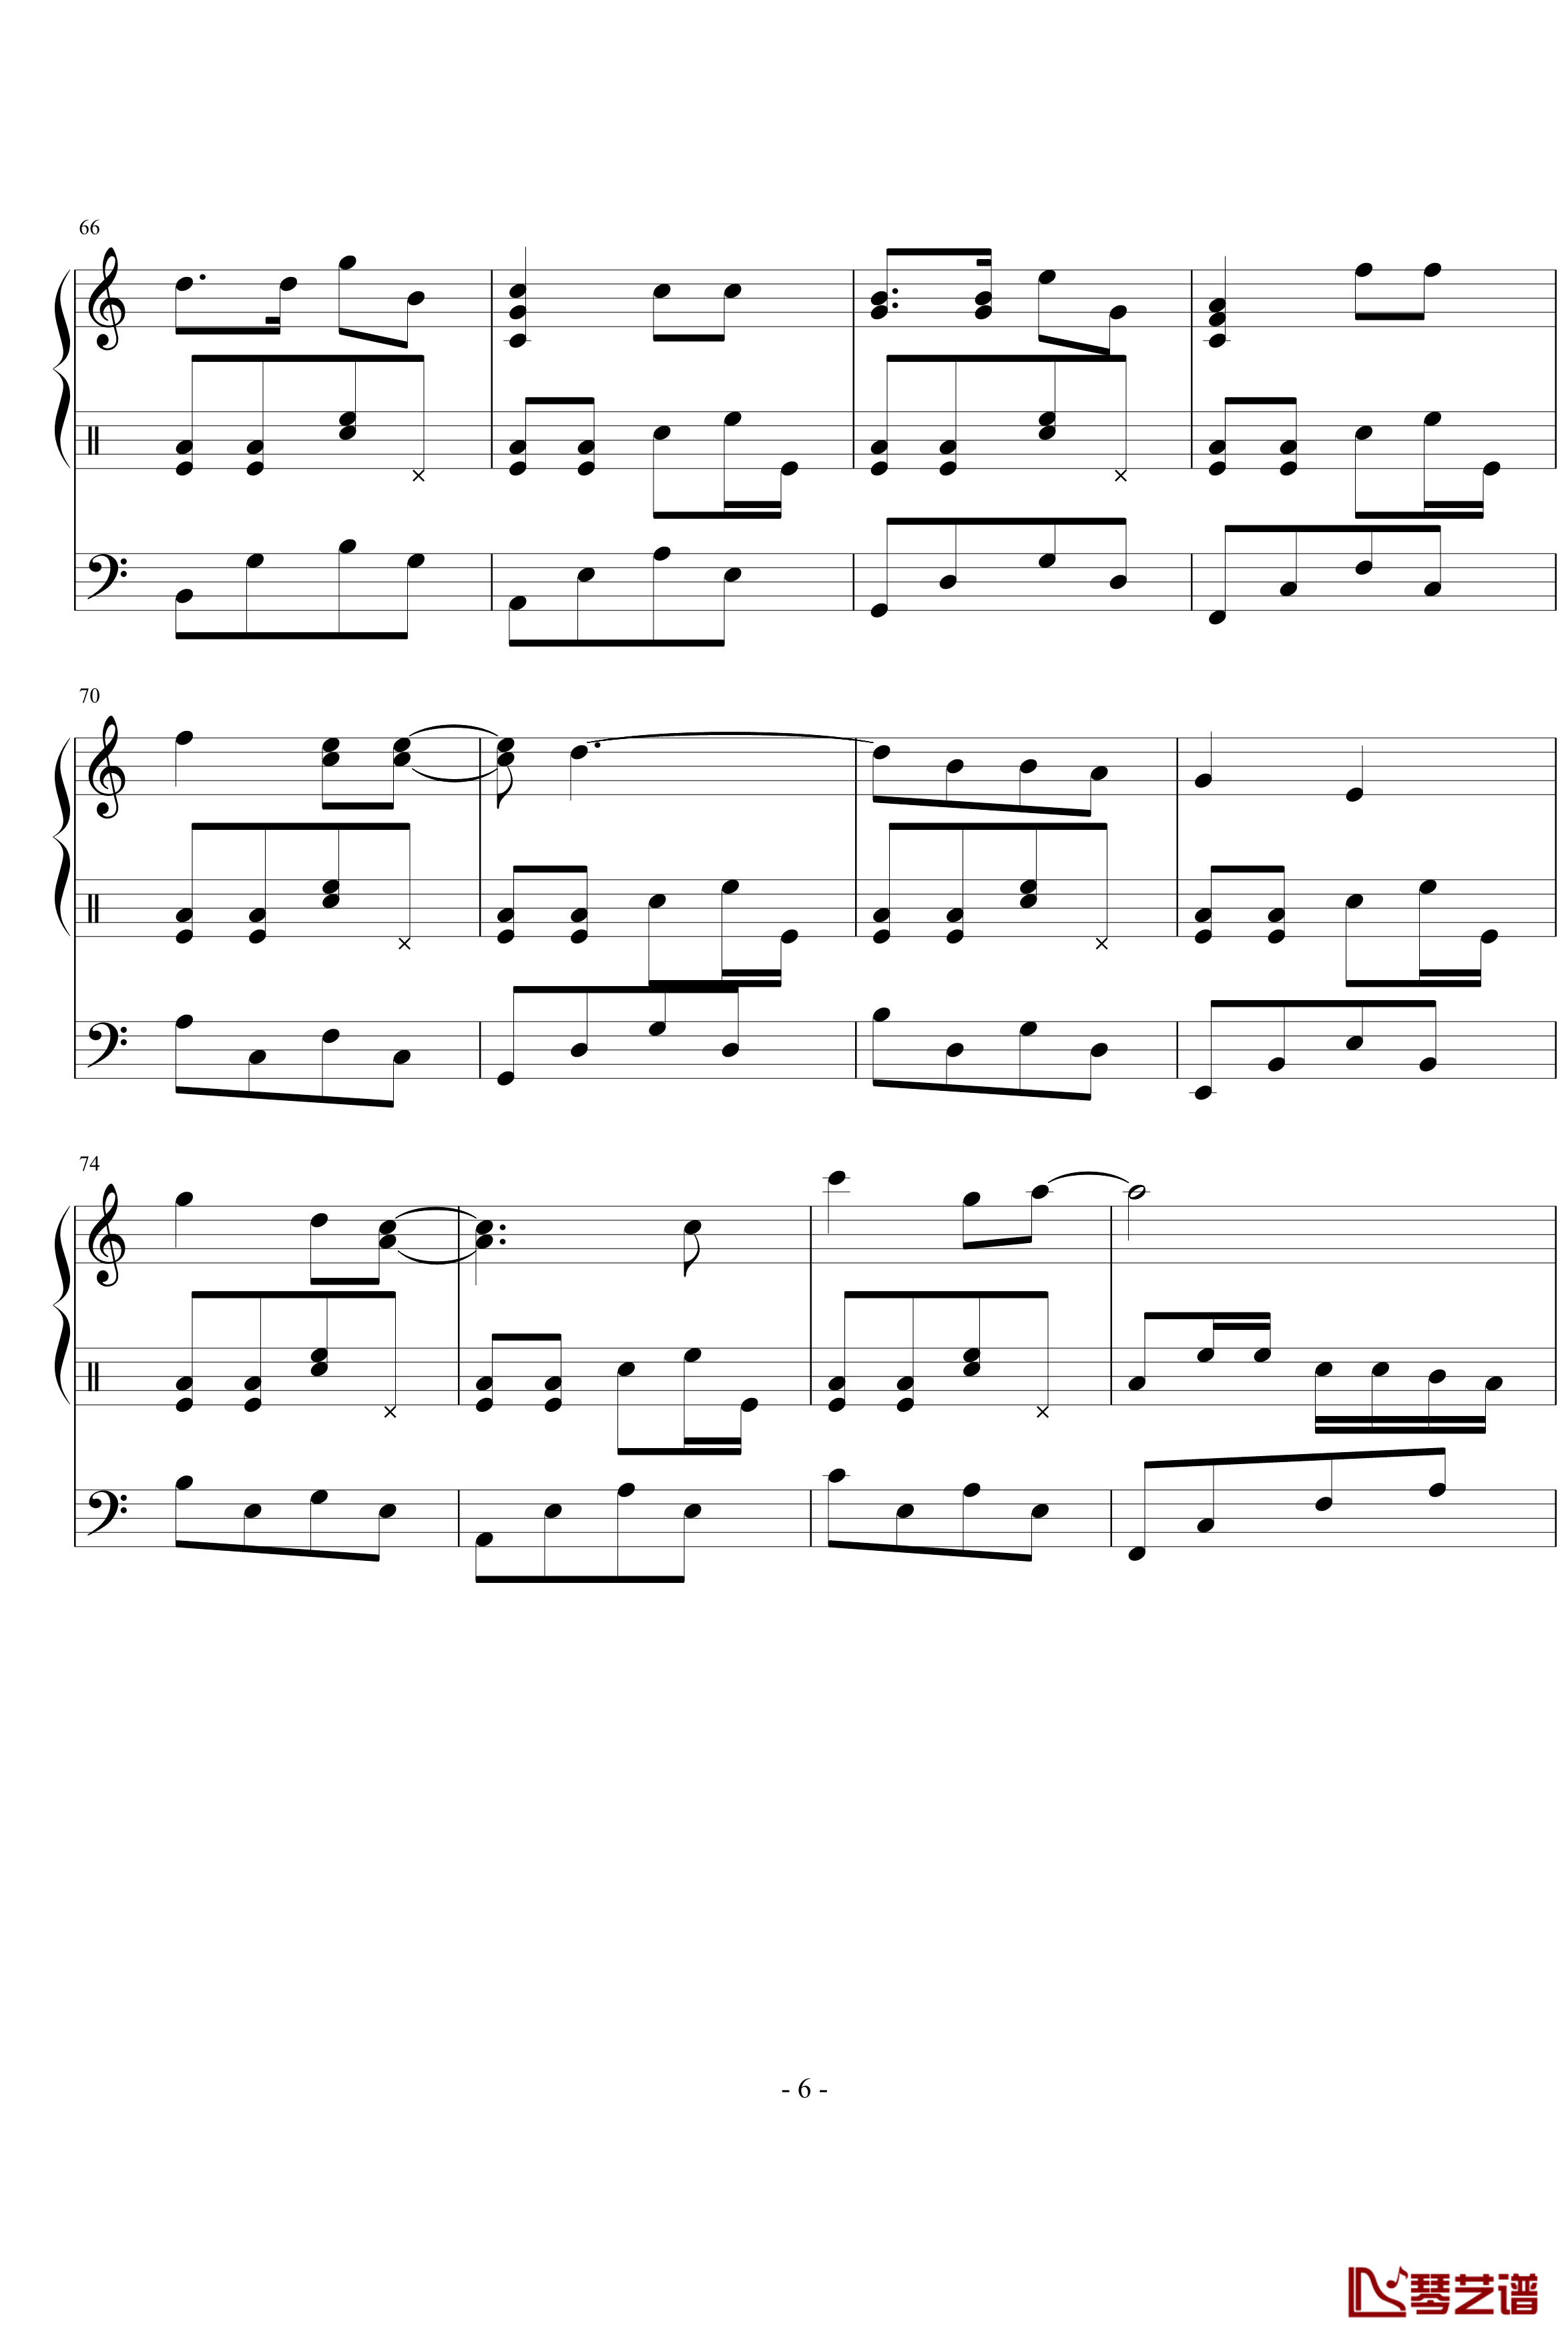 星月游乐园钢琴谱-199086hxy6